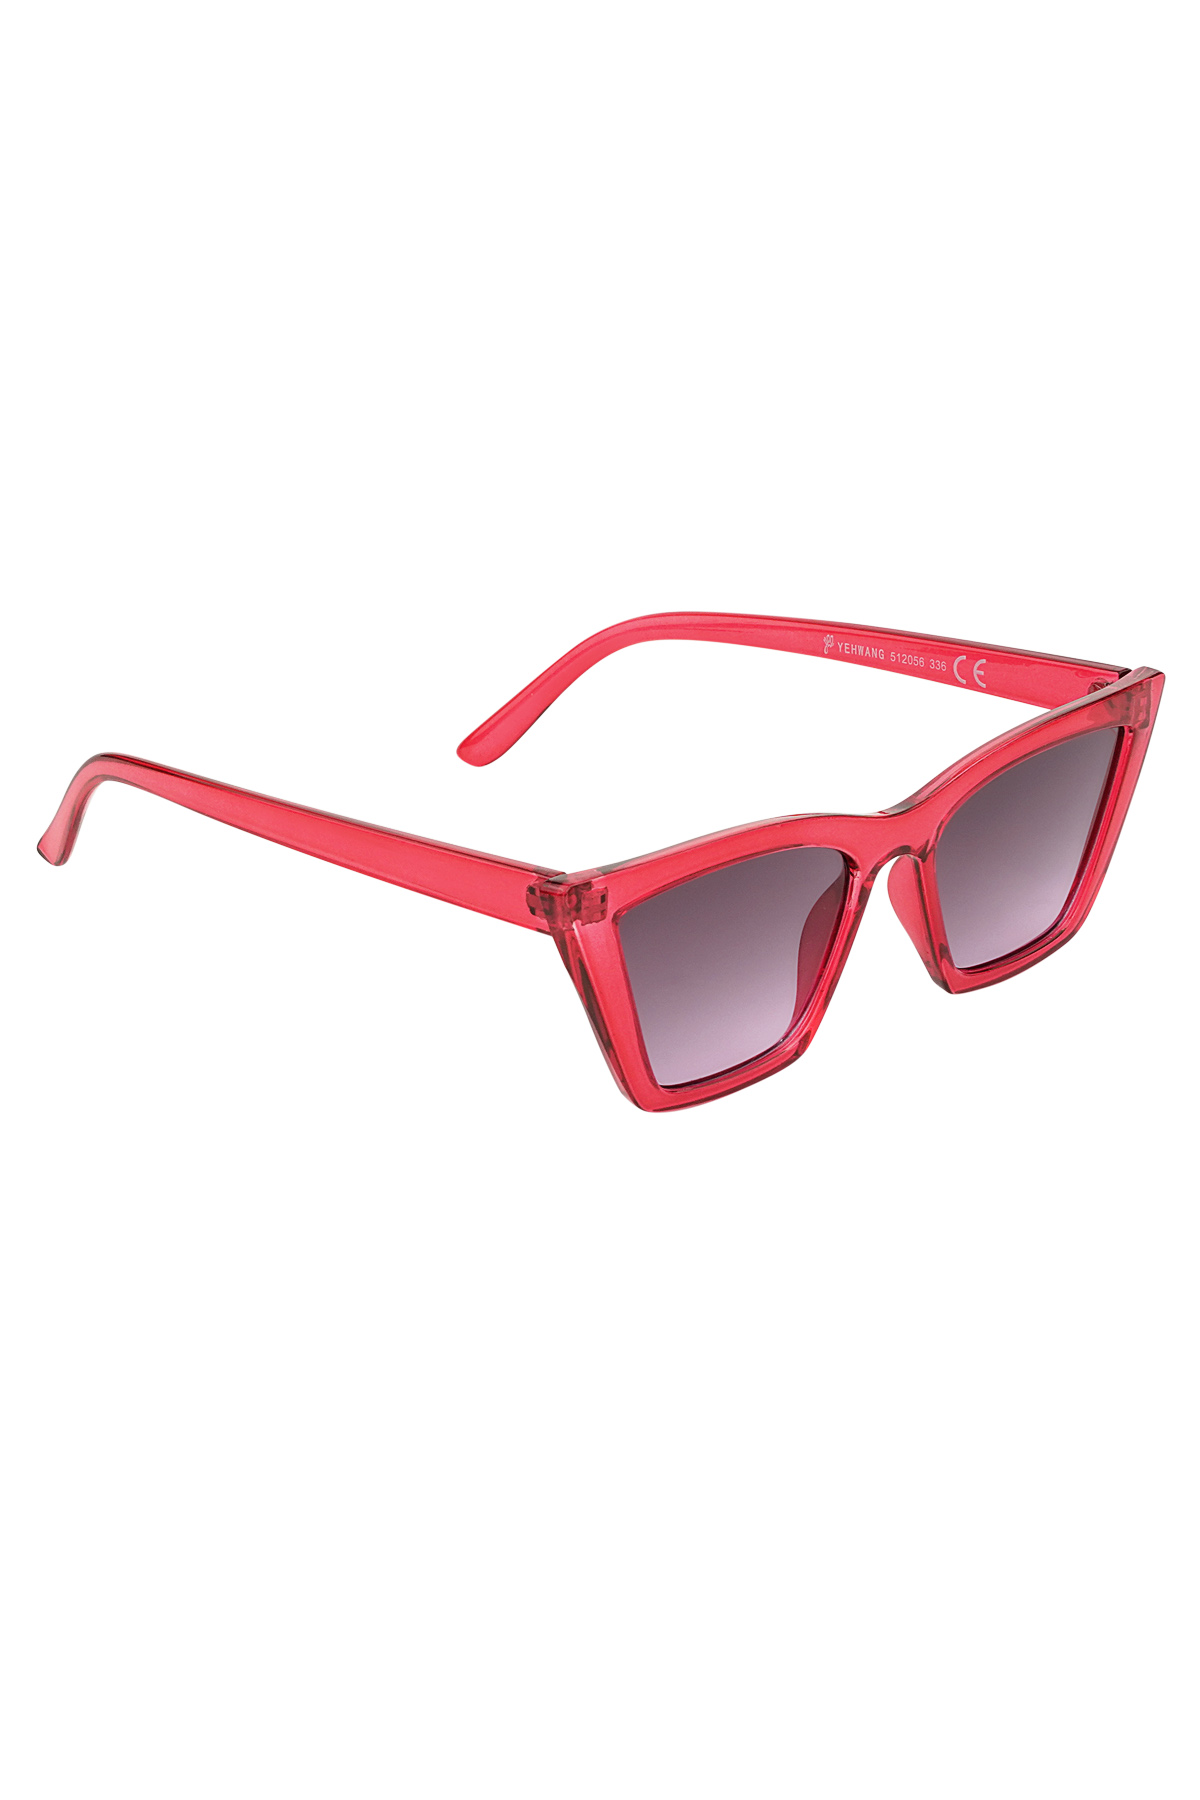 Gafas de sol cat eye monocromáticas - rojo